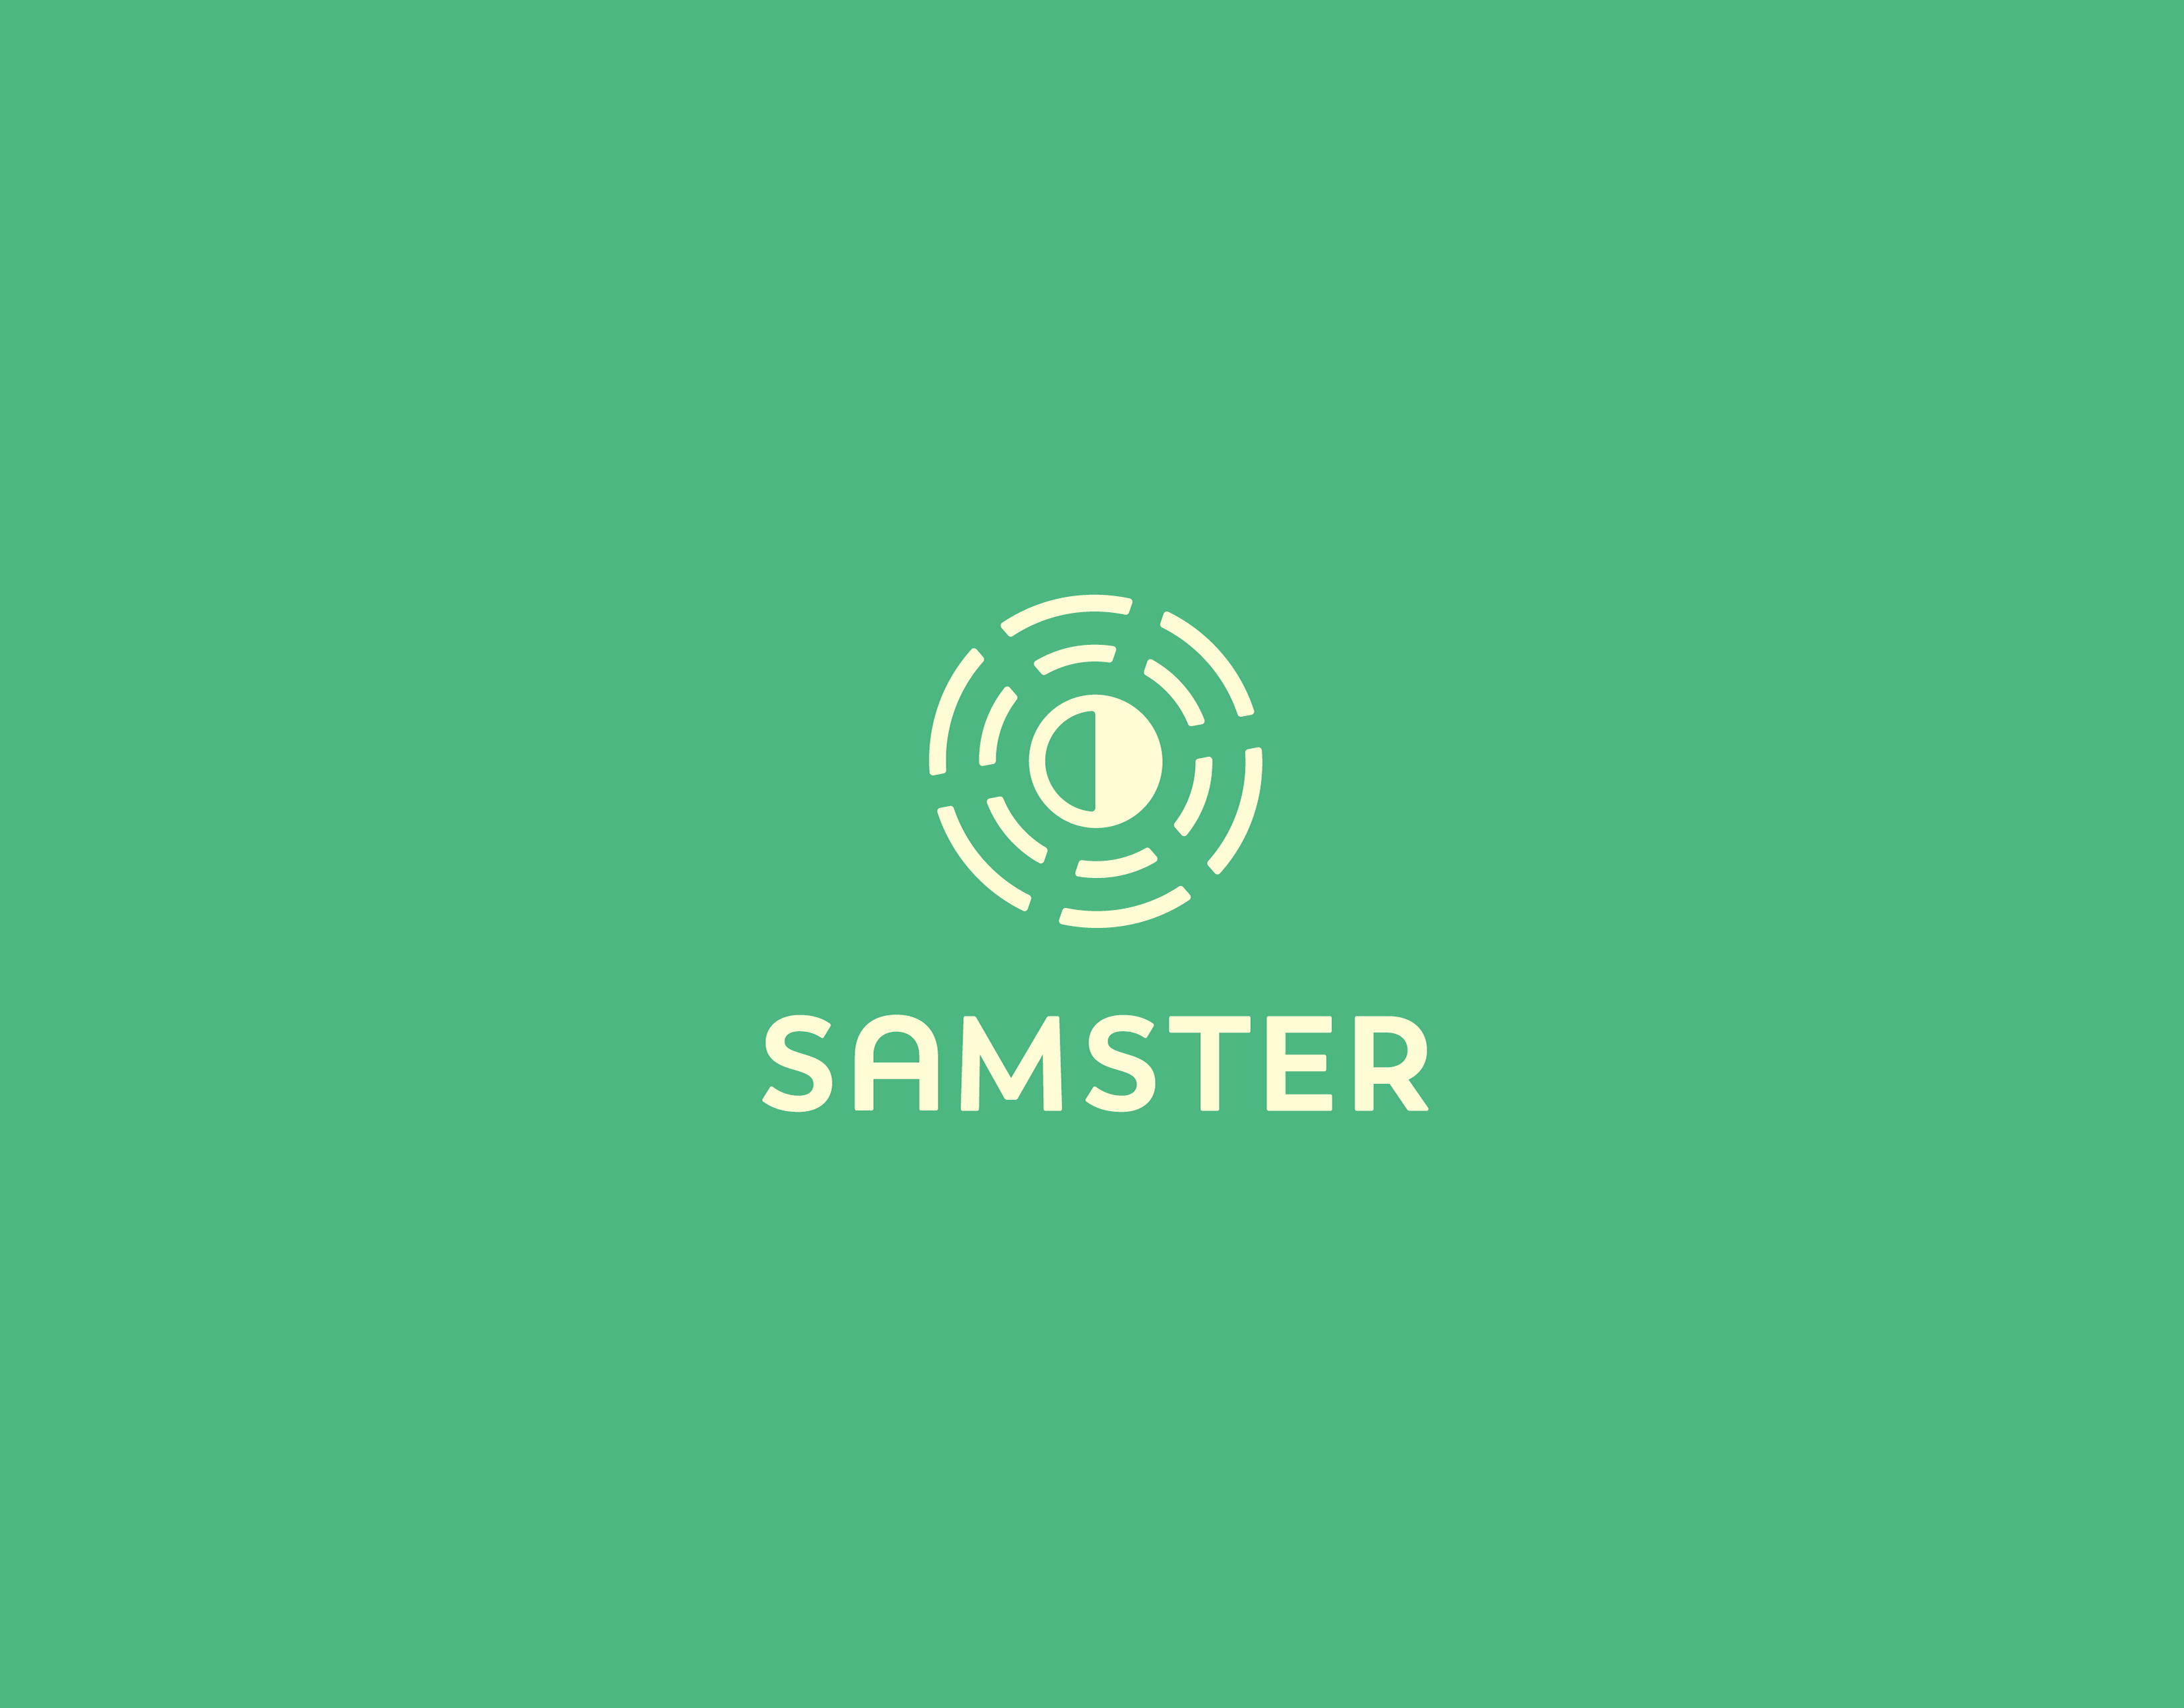 Samster logo